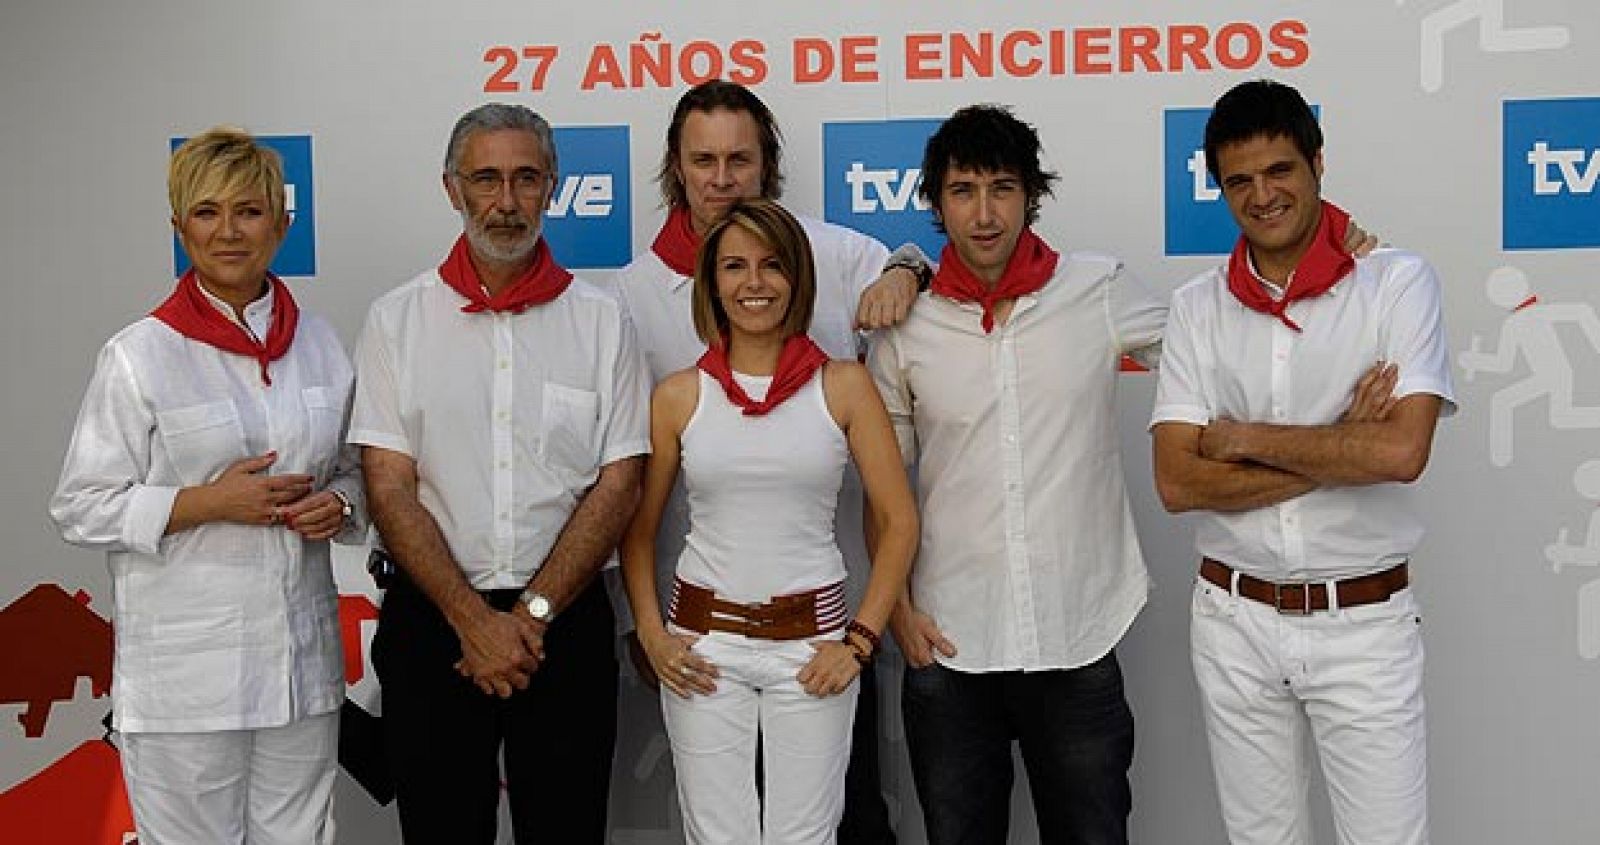 De izquierda a derecha, Inés Ballester, Javier Solano, Tom Kallene, Pilar García Muñiz, Toni Garrido e Iñaki del Moral.